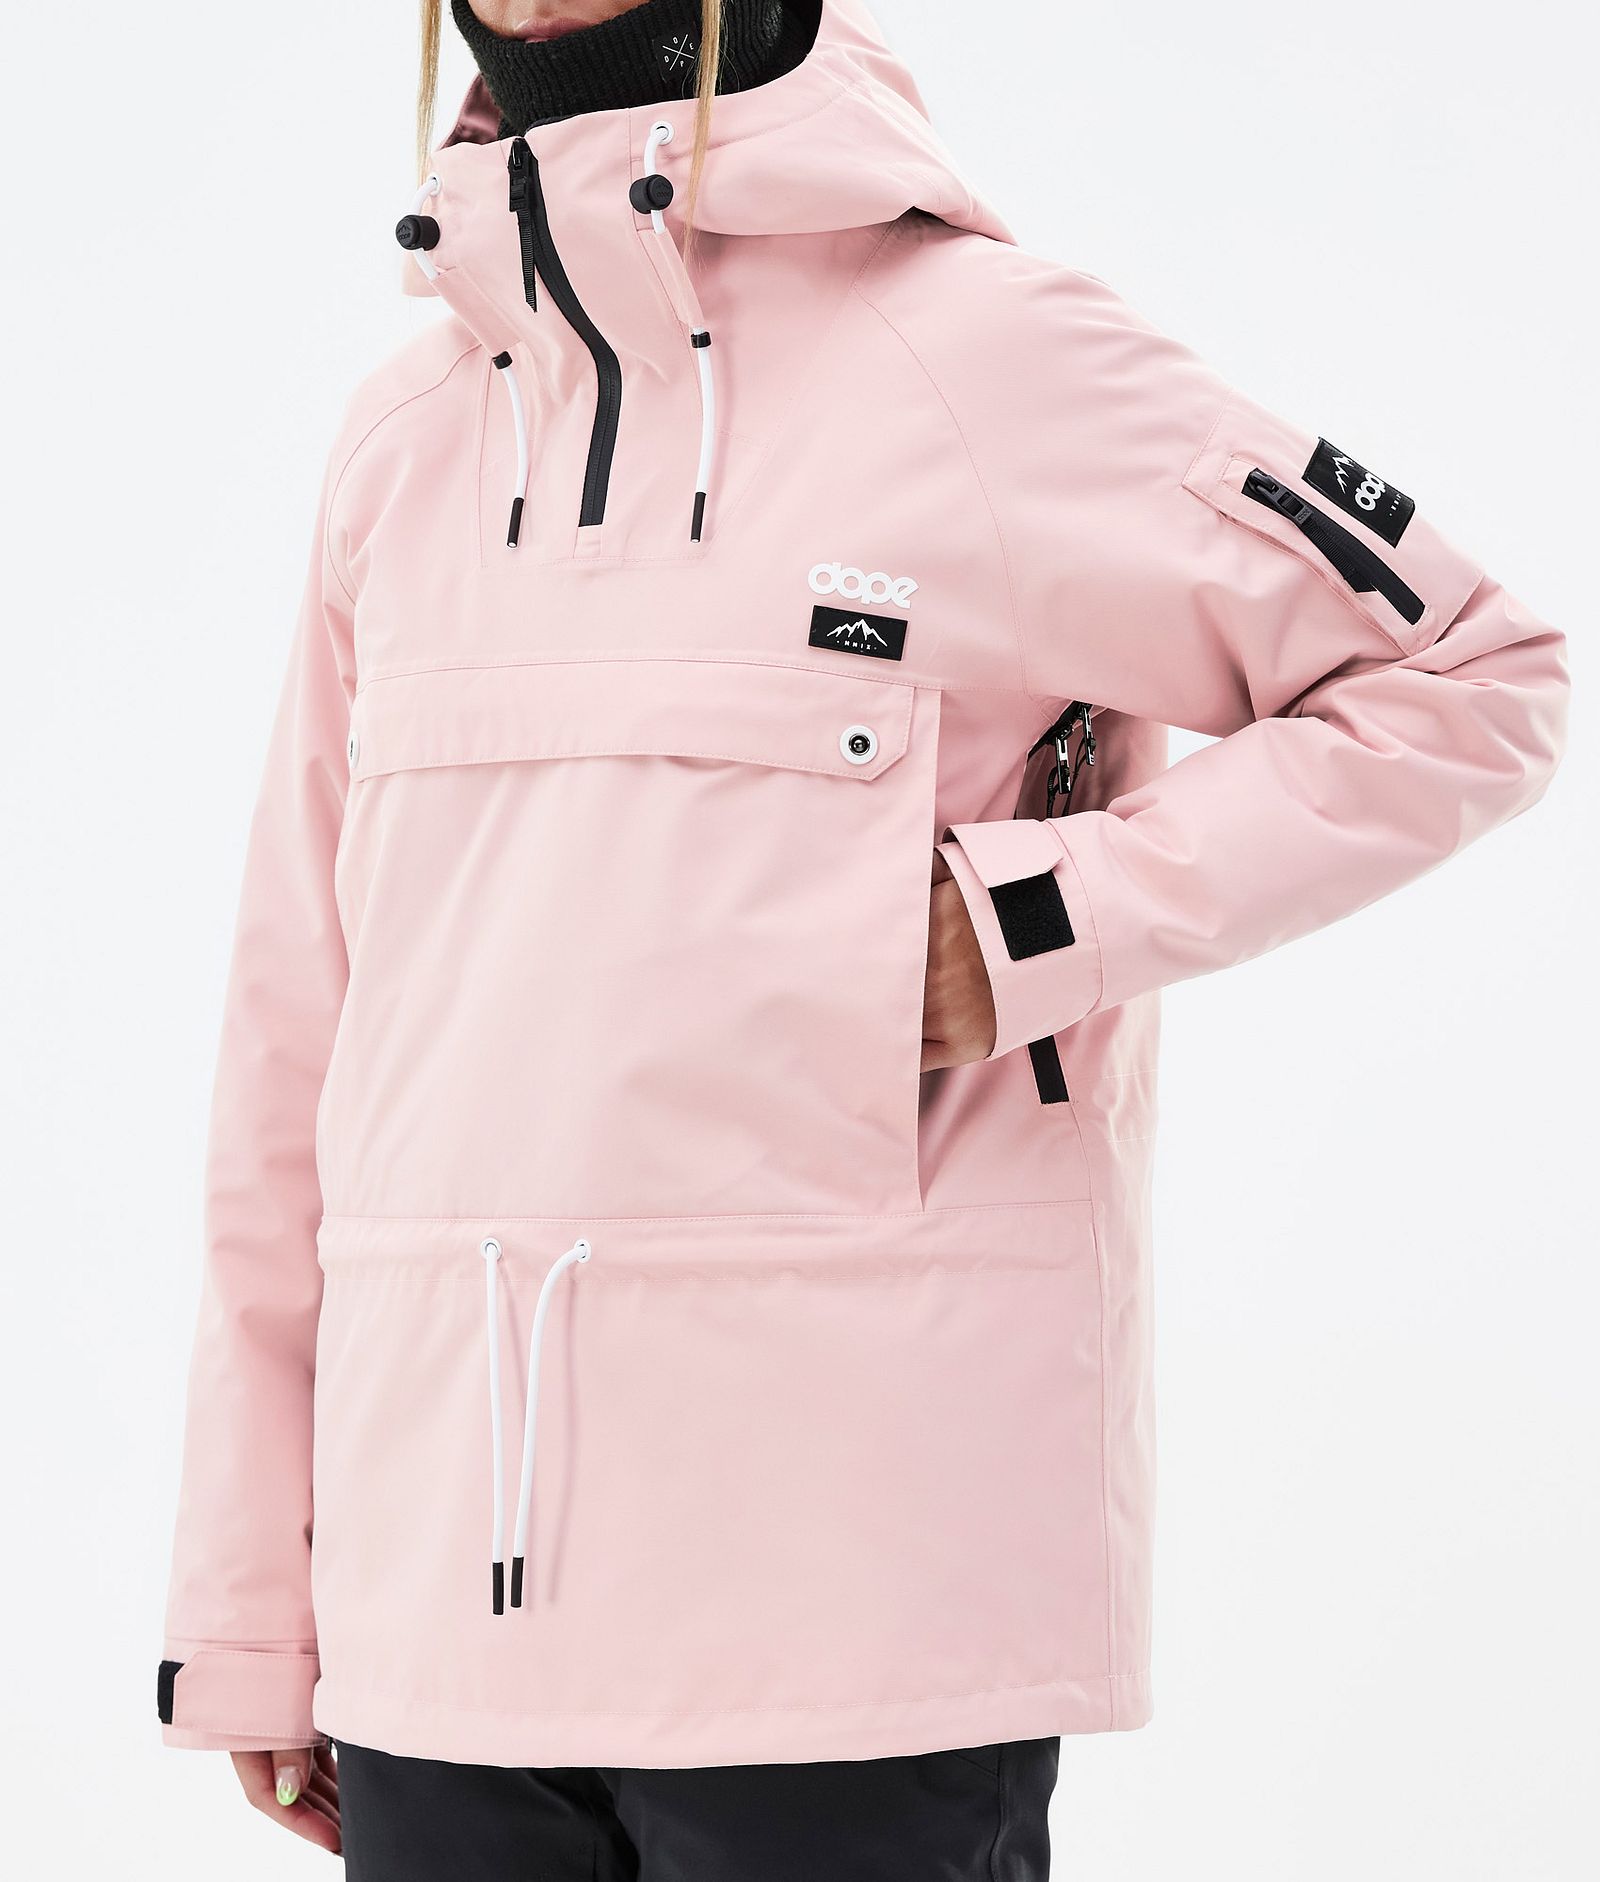 Annok W Snowboard Jacket Women Soft Pink, Image 8 of 9